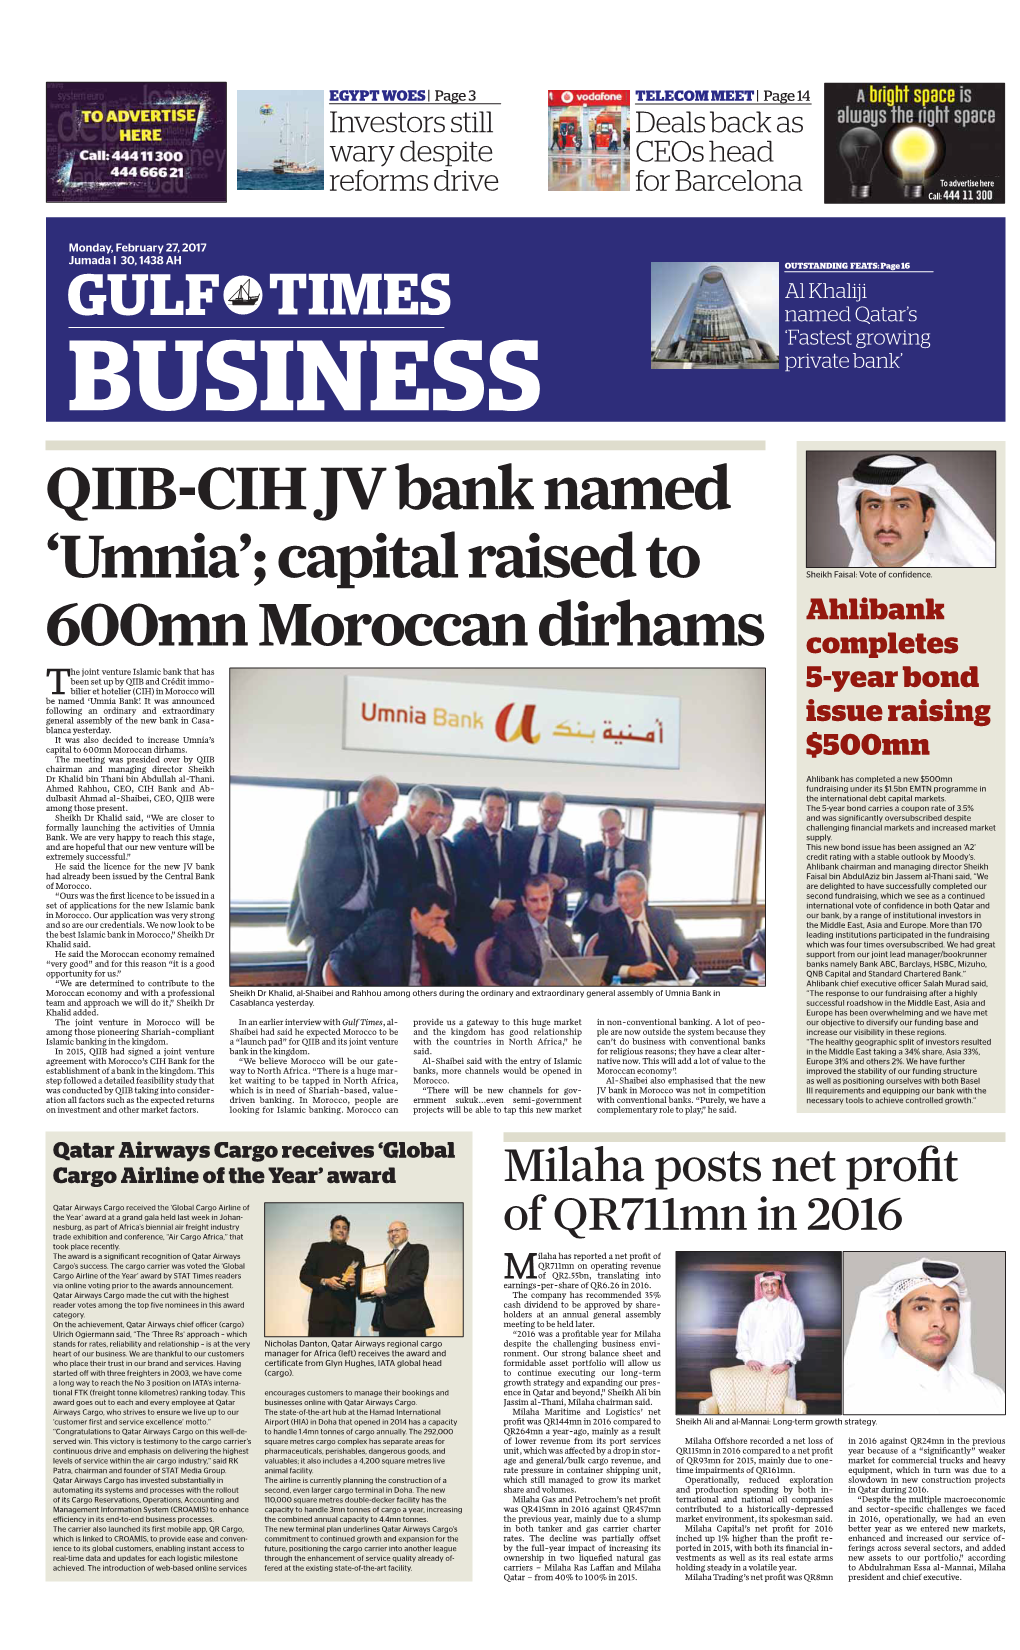 QIIB-CIH JV Bank Named